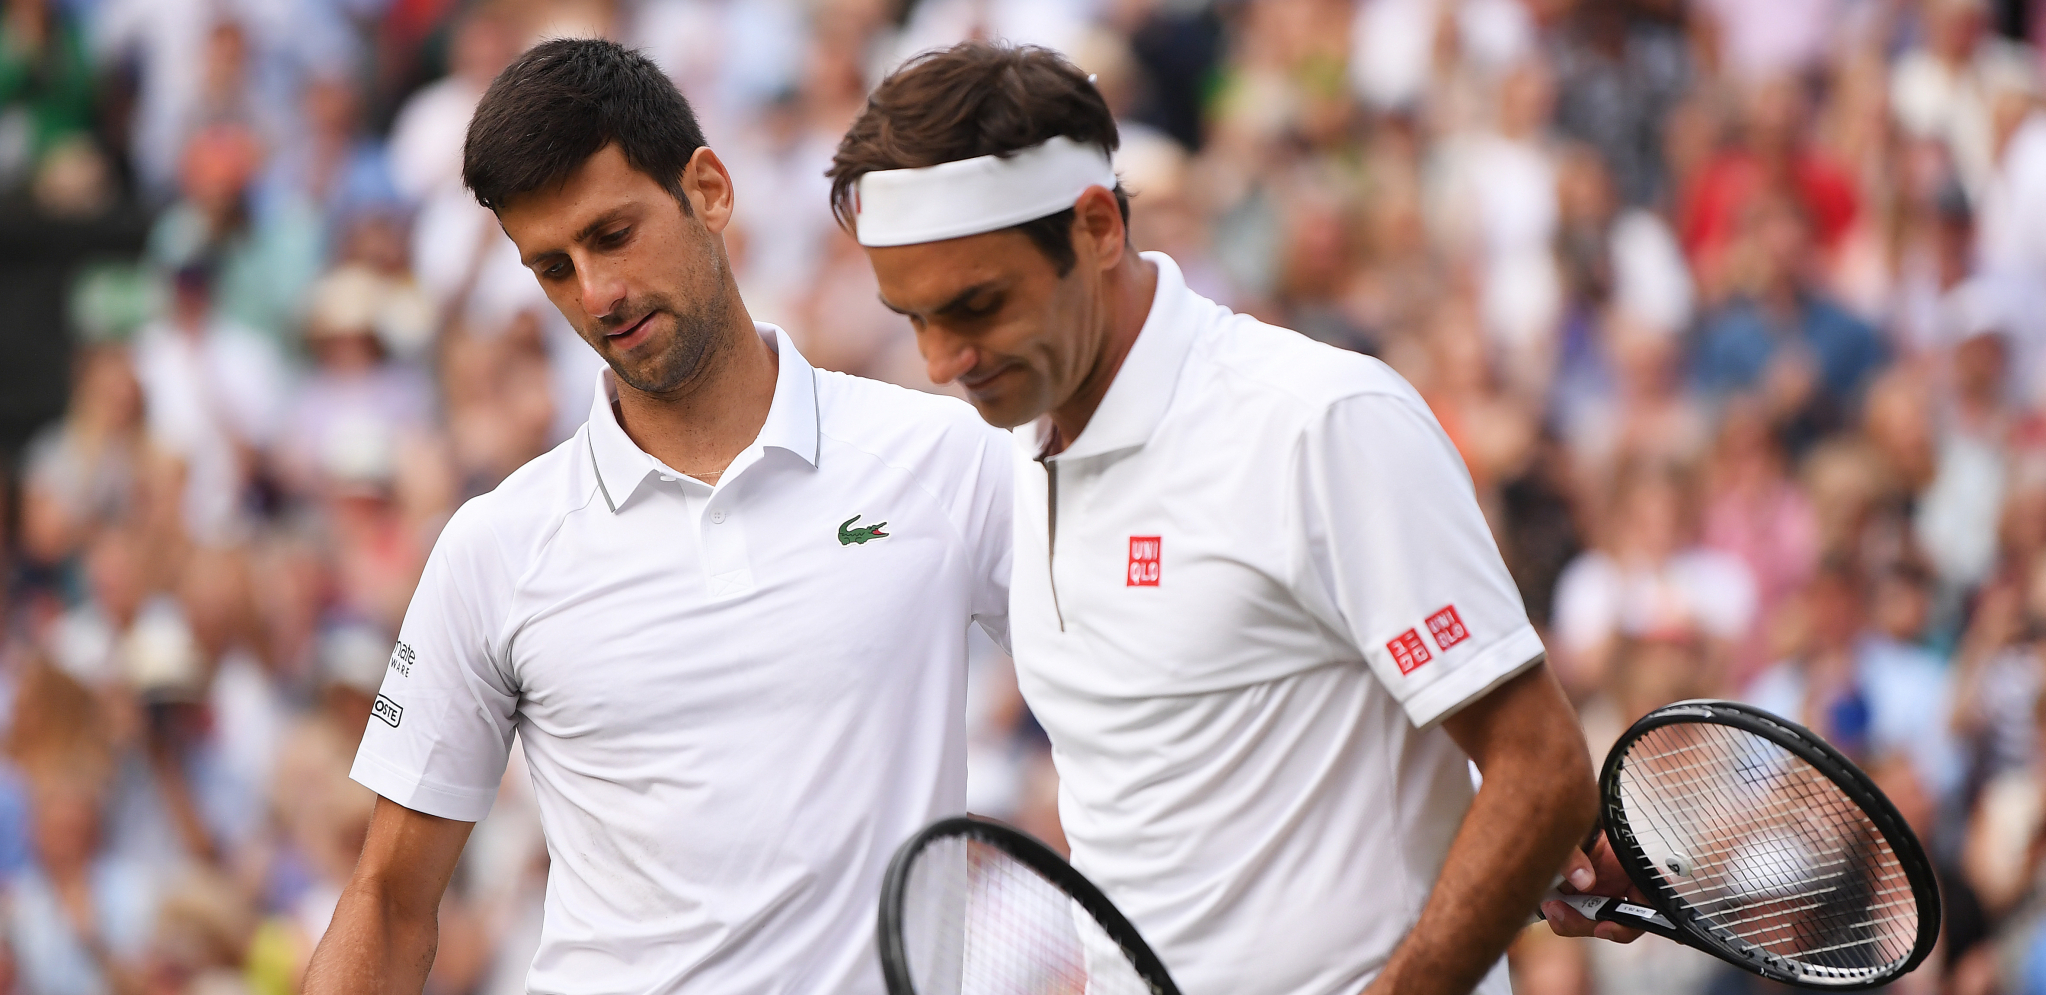 OVO NIJE RADIO 15 GODINA Dok se Novak kida u Melburnu, Federer je konačno dočekao OVO (VIDEO)